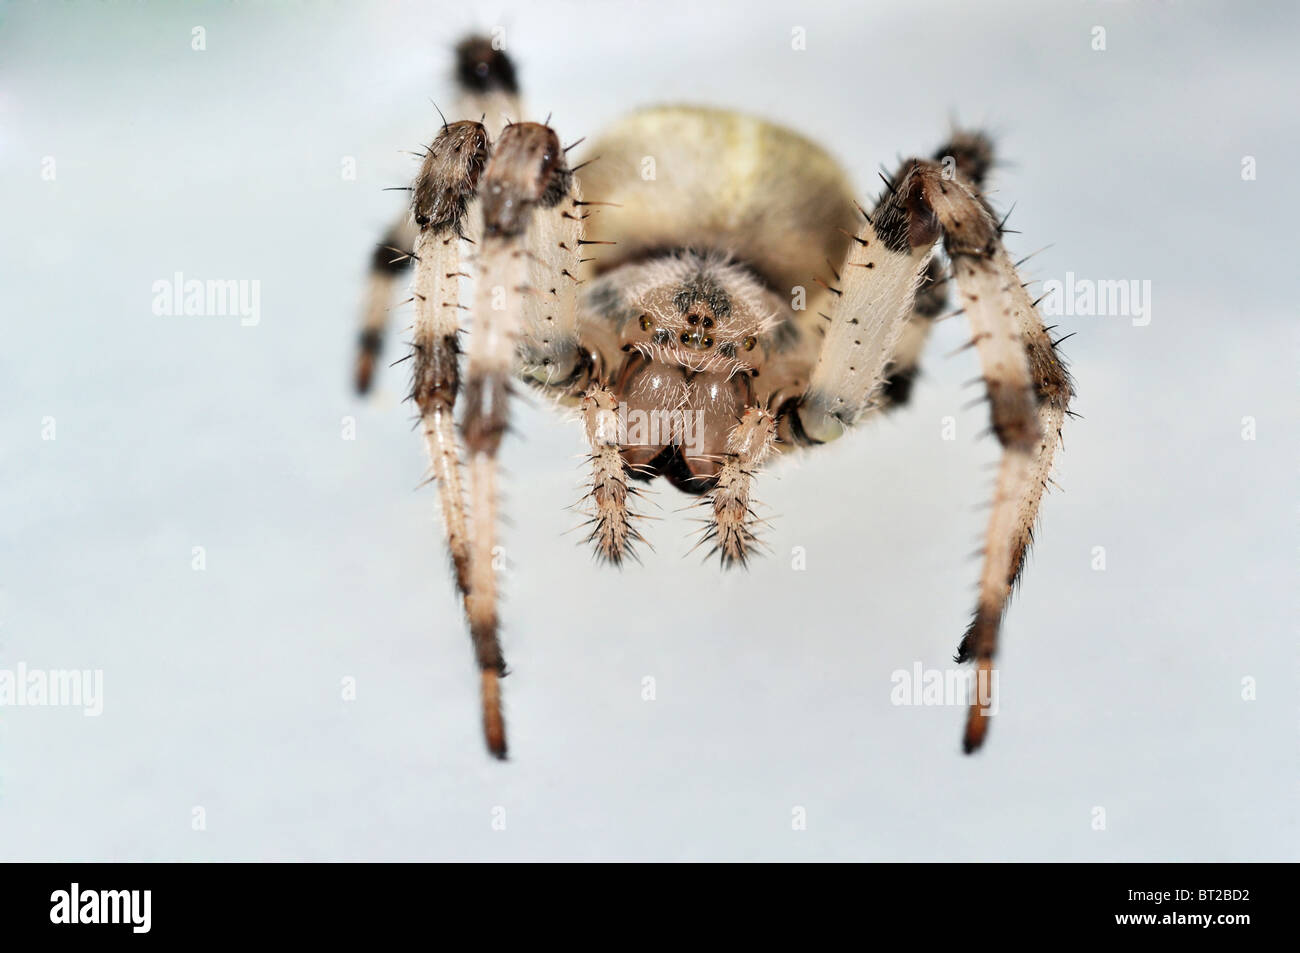 Croce spider cercando in lente sullo sfondo mite Foto Stock